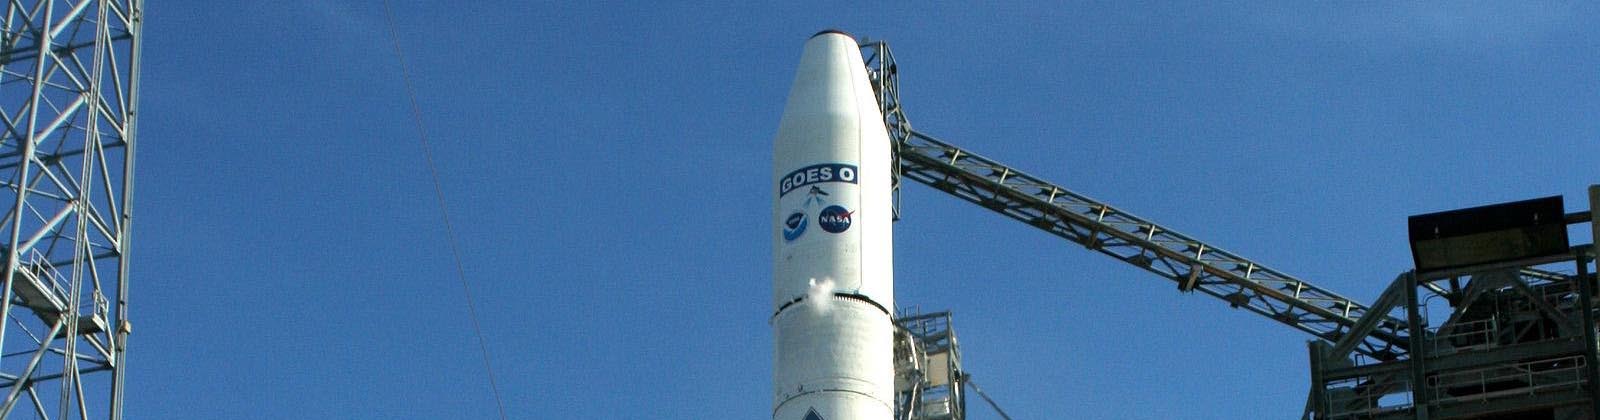 Lancement du satellite GOES O par une fusée Delta